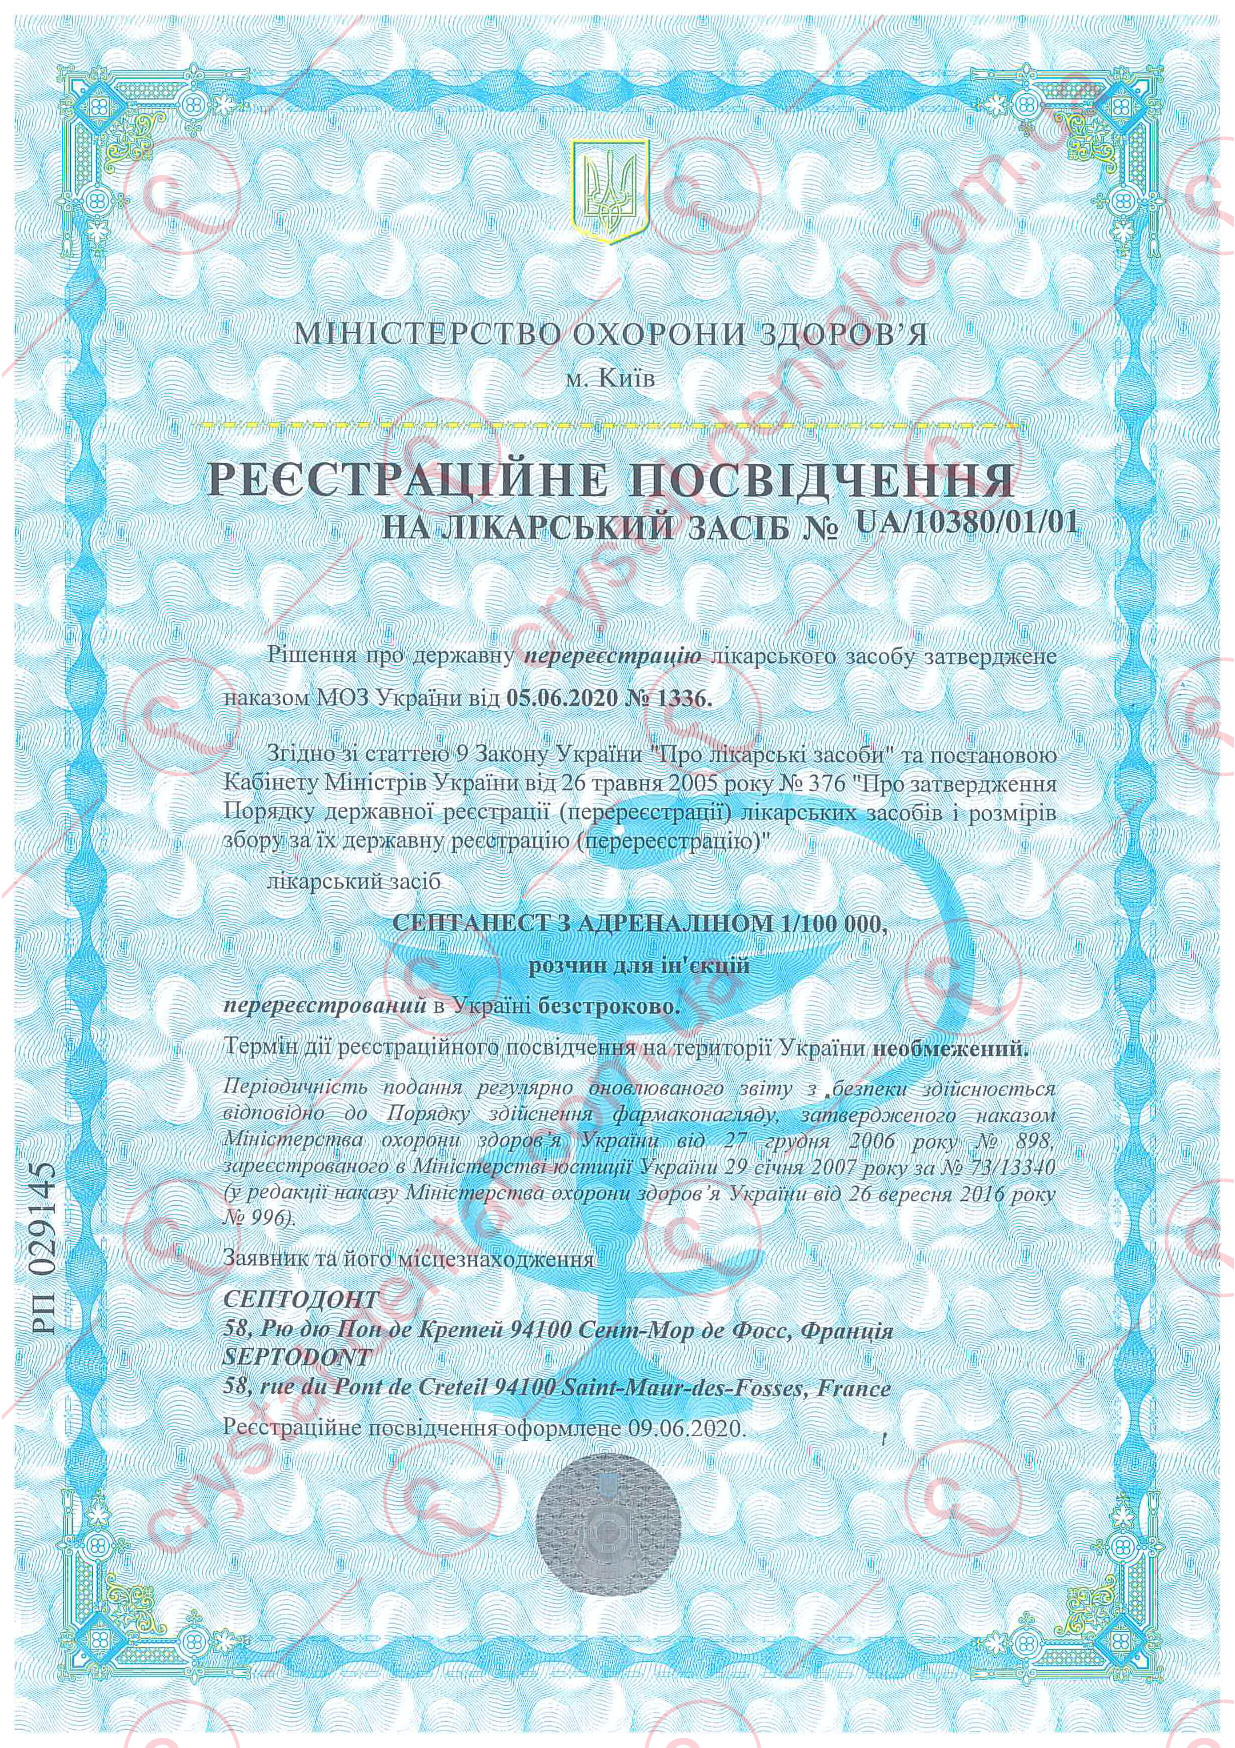 Сертифікат Septanest 1/100 000